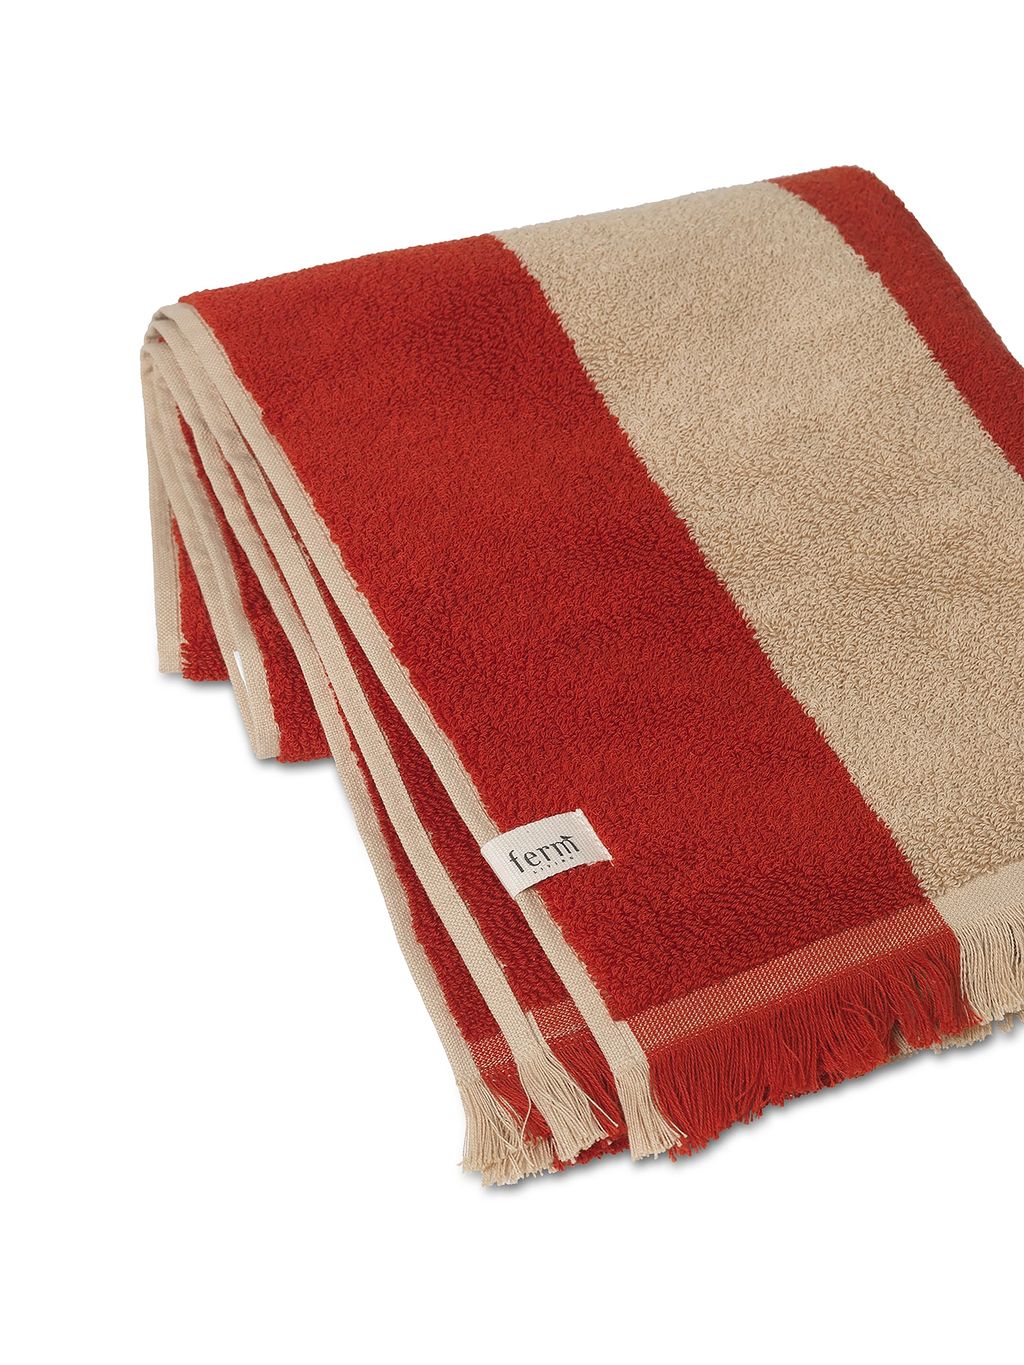 Ferm Living Alee Towel 50x100 Cm, Light Camel/Red